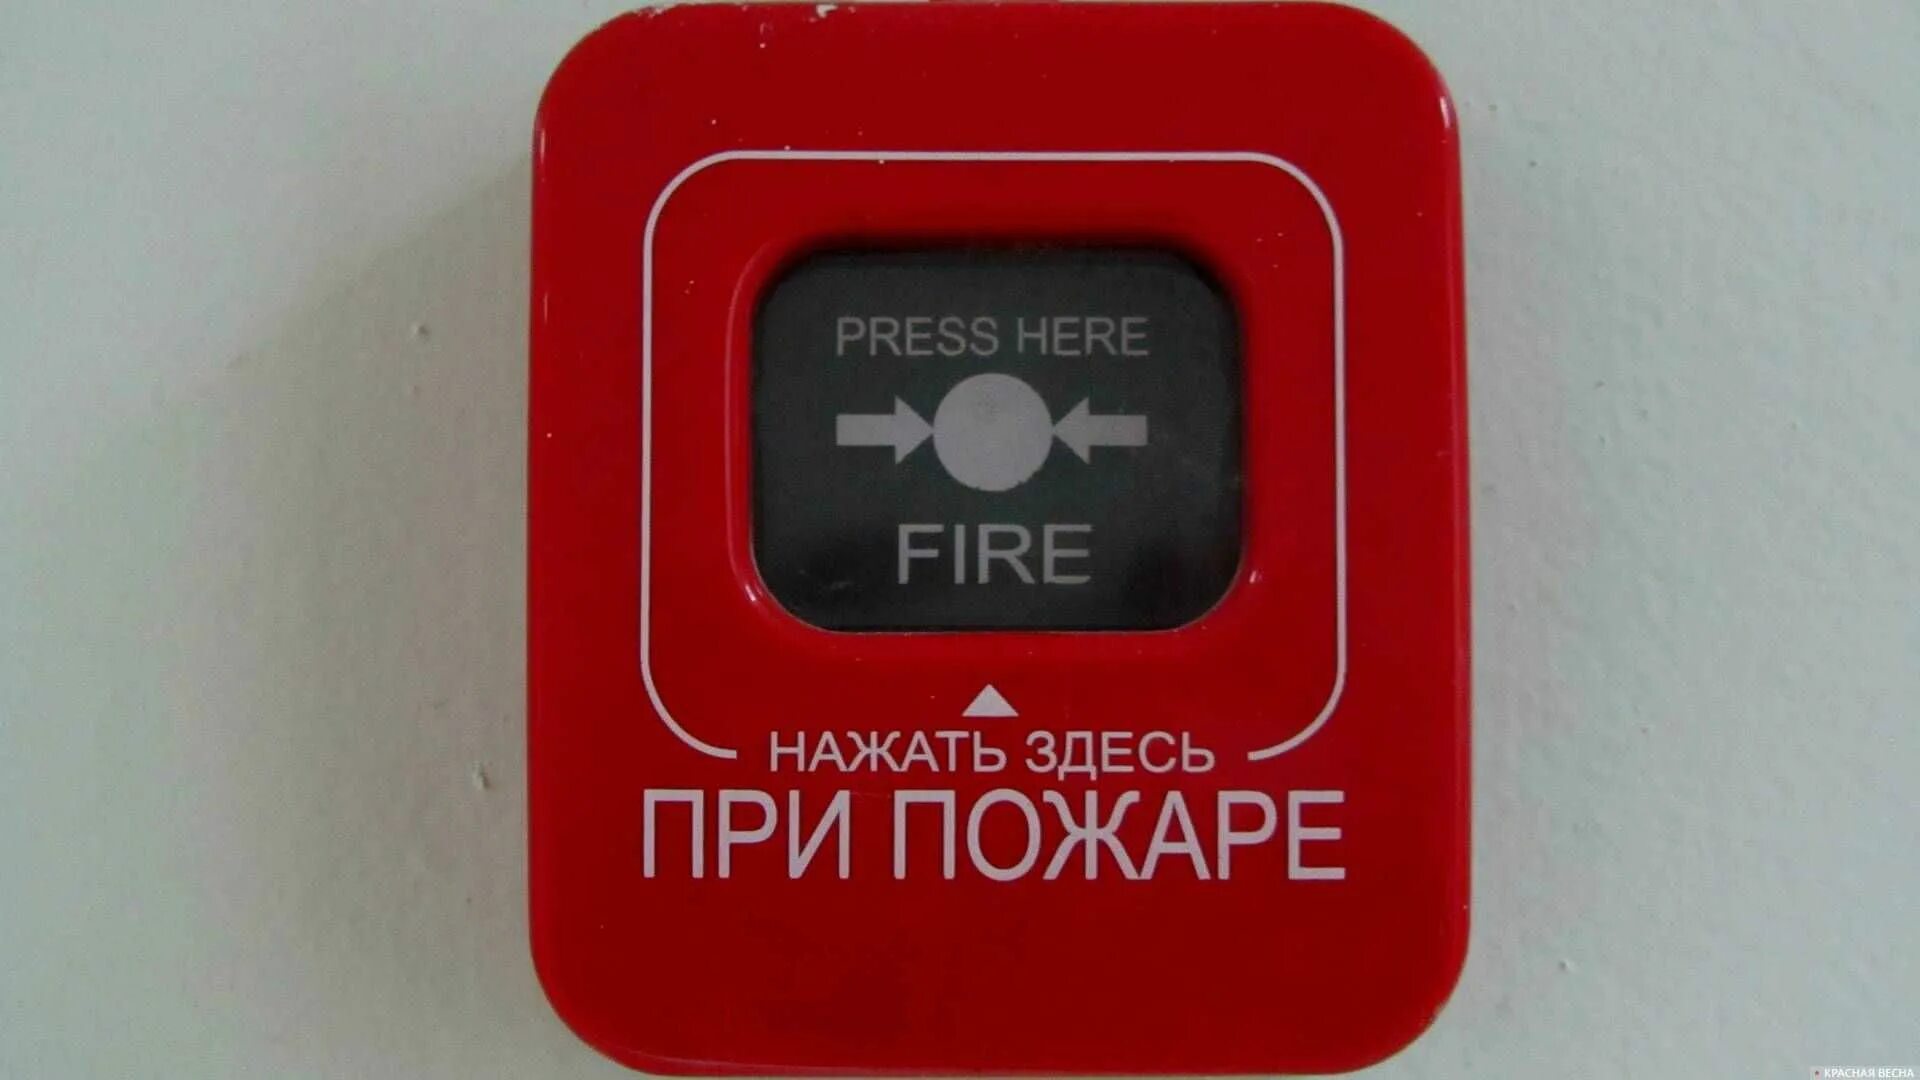 Пожарная кнопка. Нажать здесь при пожаре. Полигональная пожарная кнопка. Press руку Fire нажать при пожаре красный. Красная пожарная кнопка тонкая.